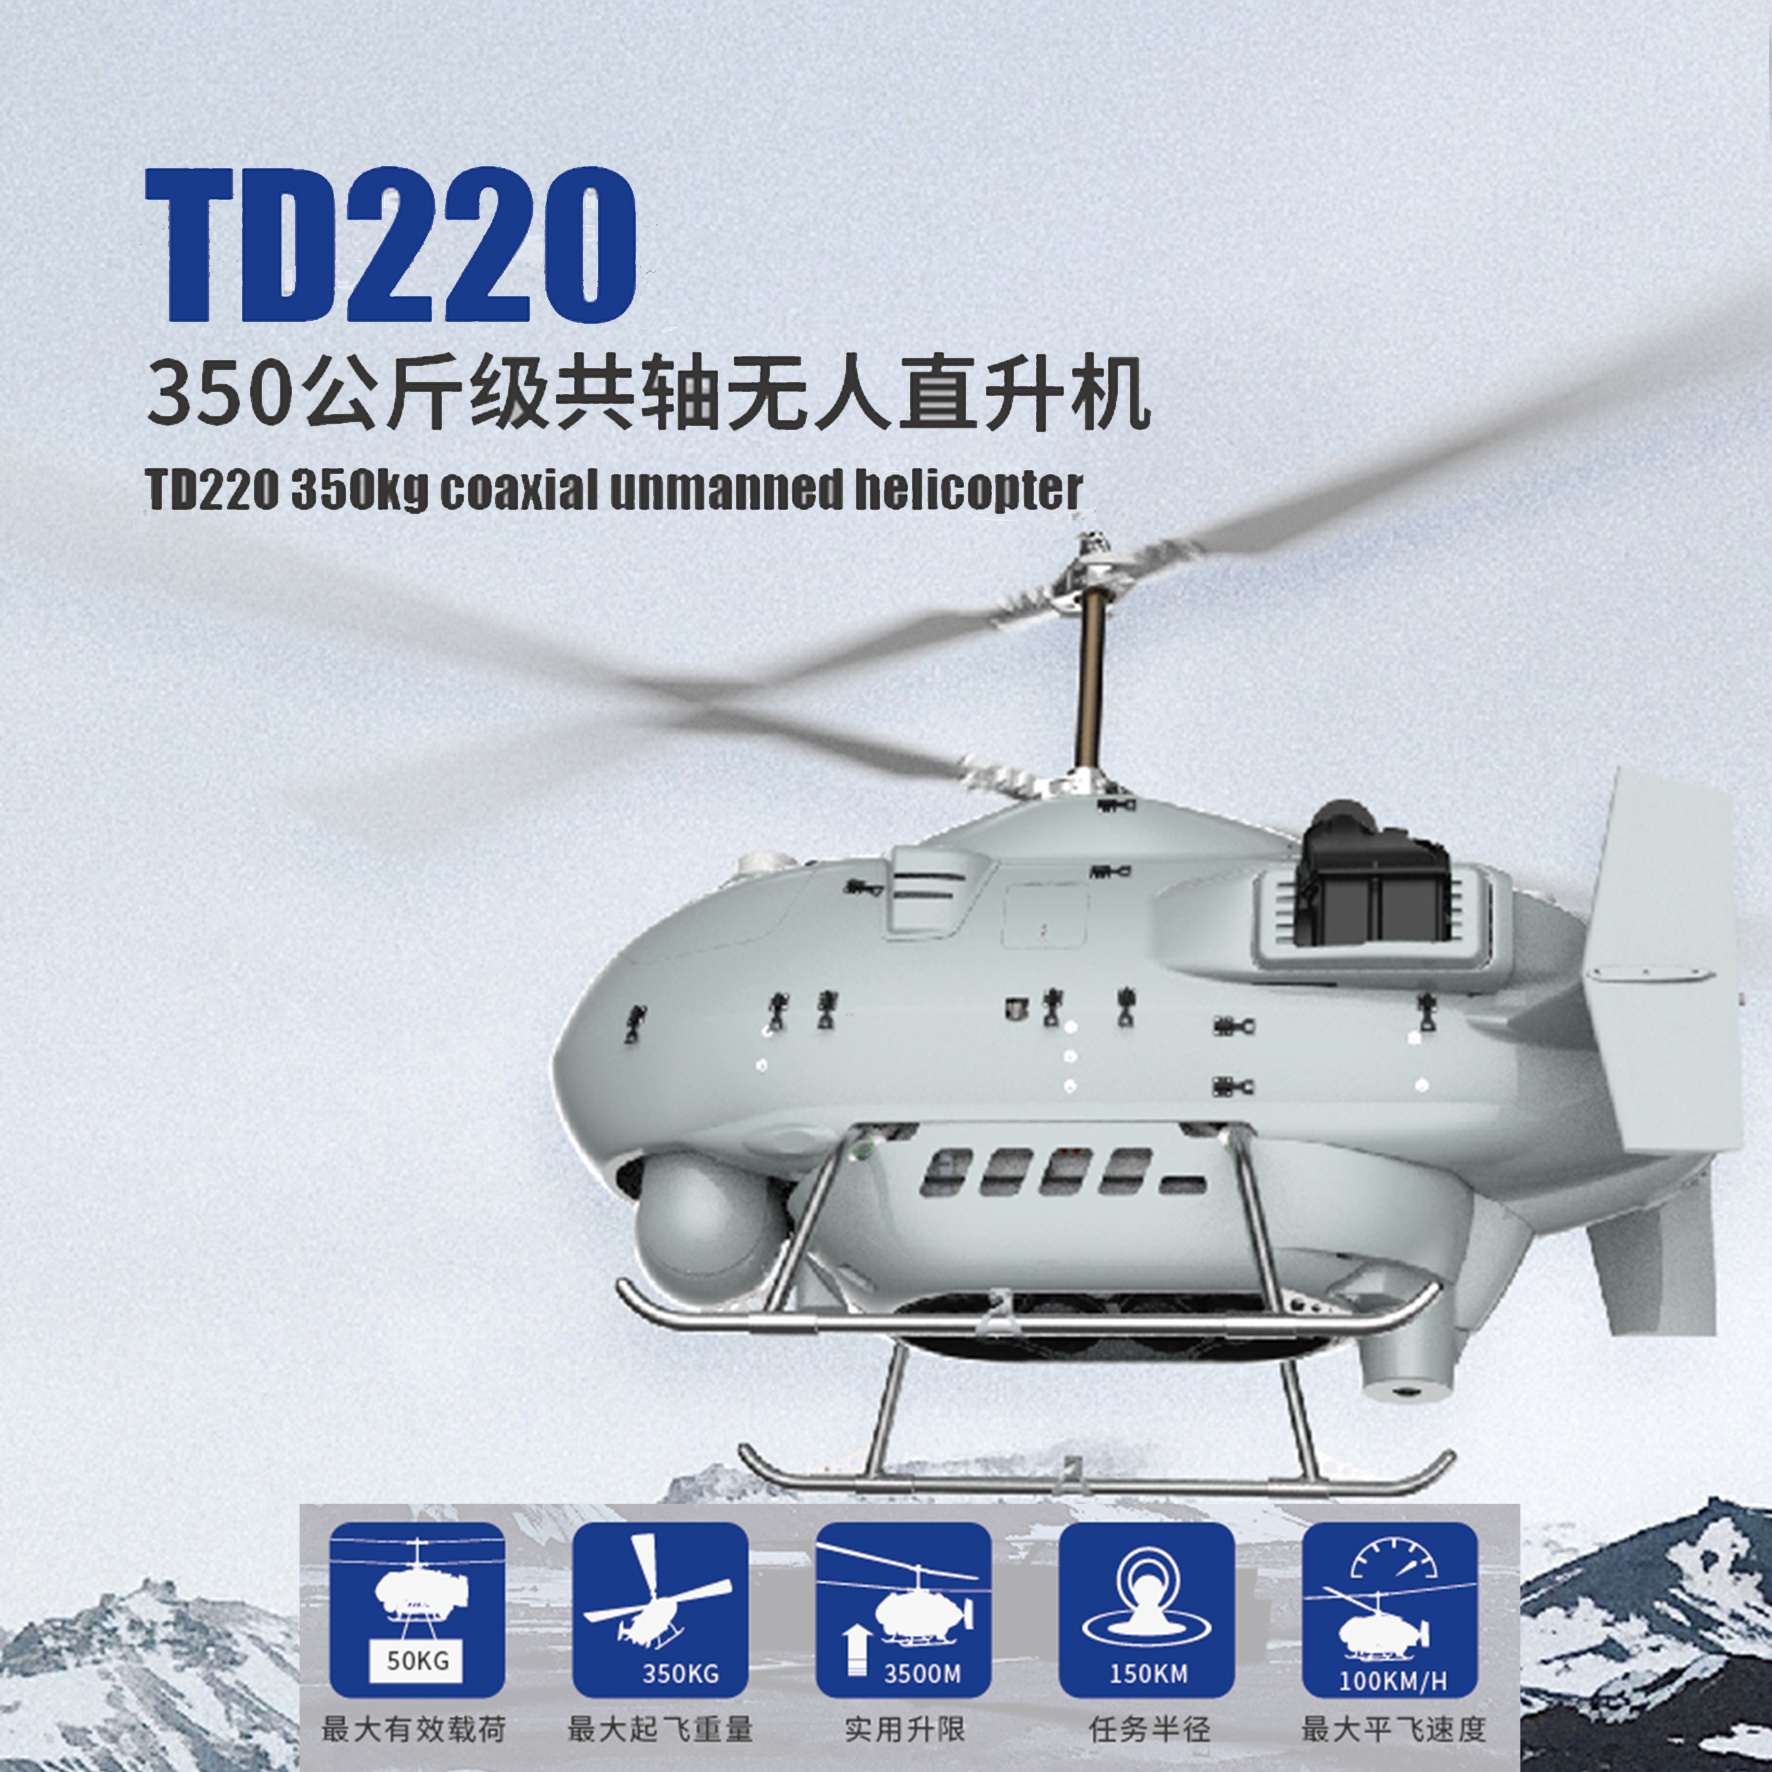 TD220无人直升机平台